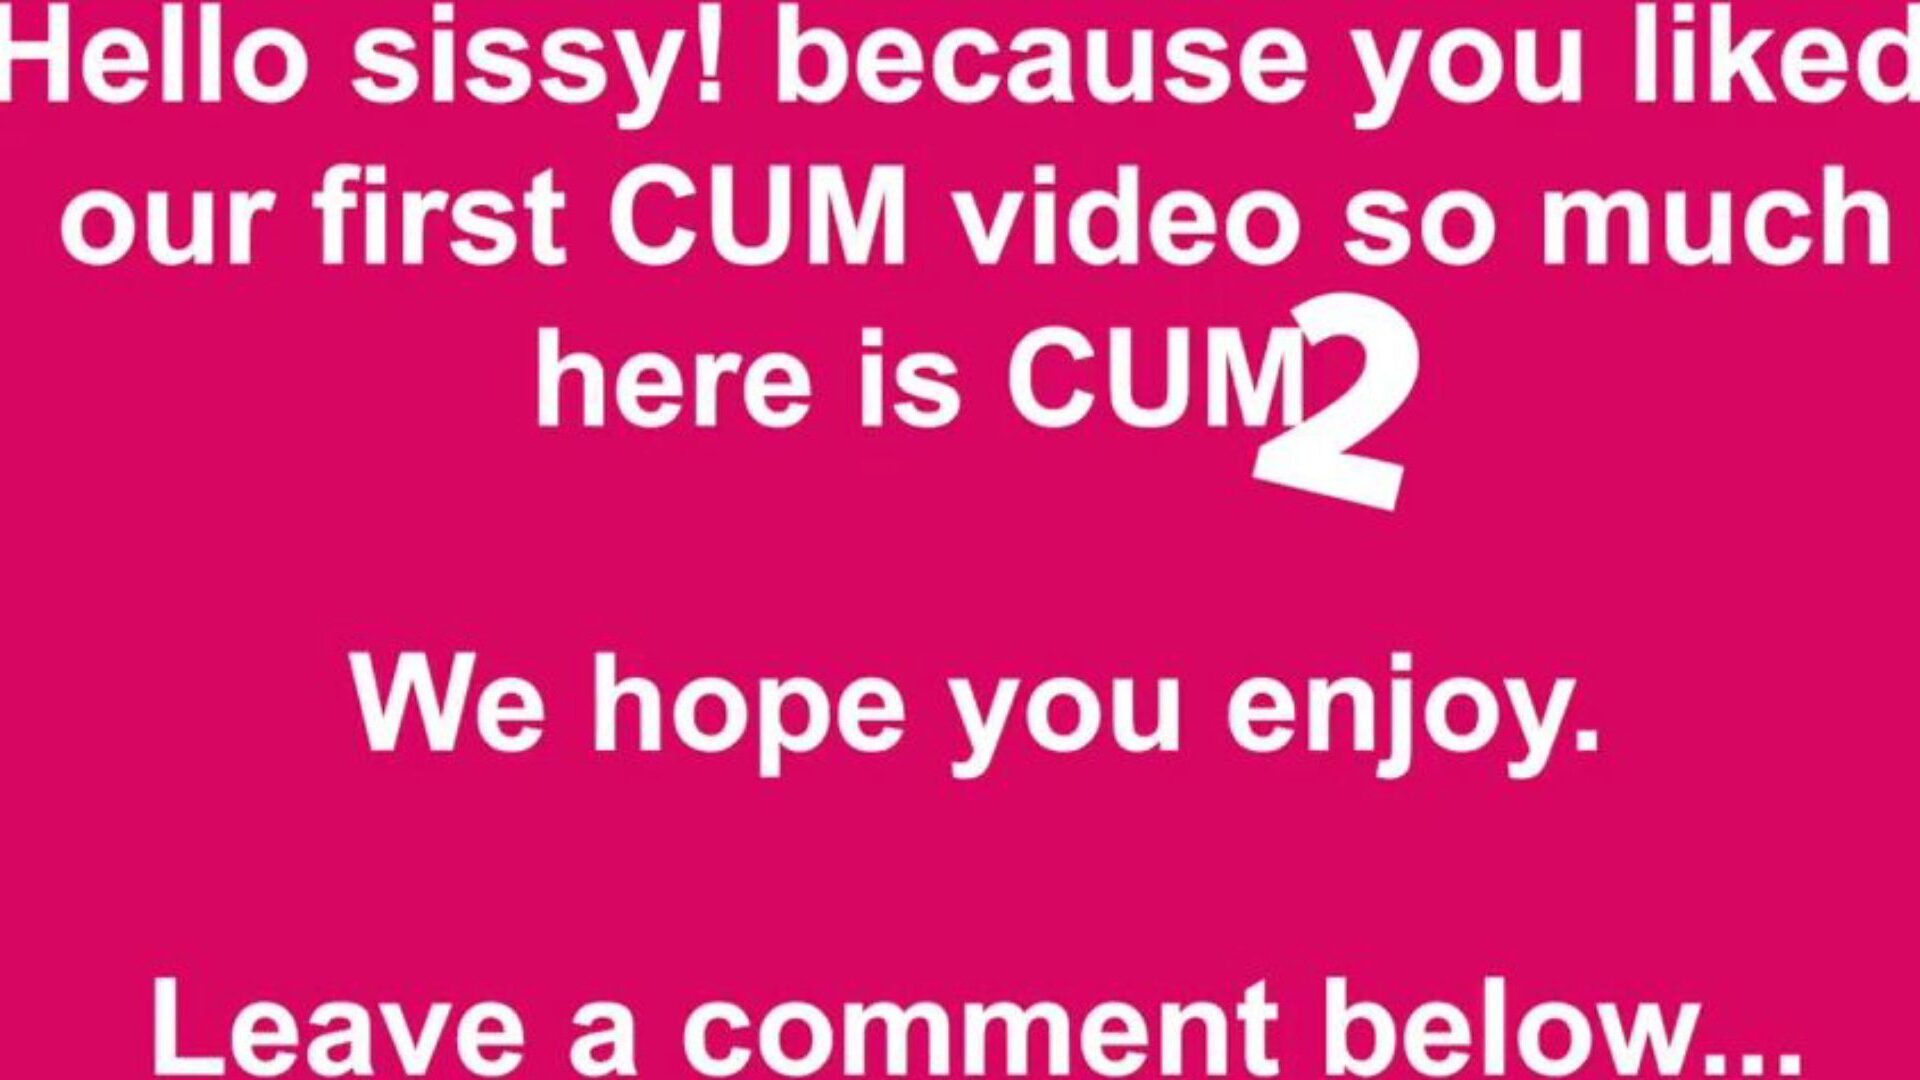 cum two free cum & cumming tube video porno 49 - xhamster regarder cum two tube fuck-a-thon video gratuitement sur xhamster, avec la collection impérieuse de tube et tube cumming gratuit 2 épisodes de films porno hd